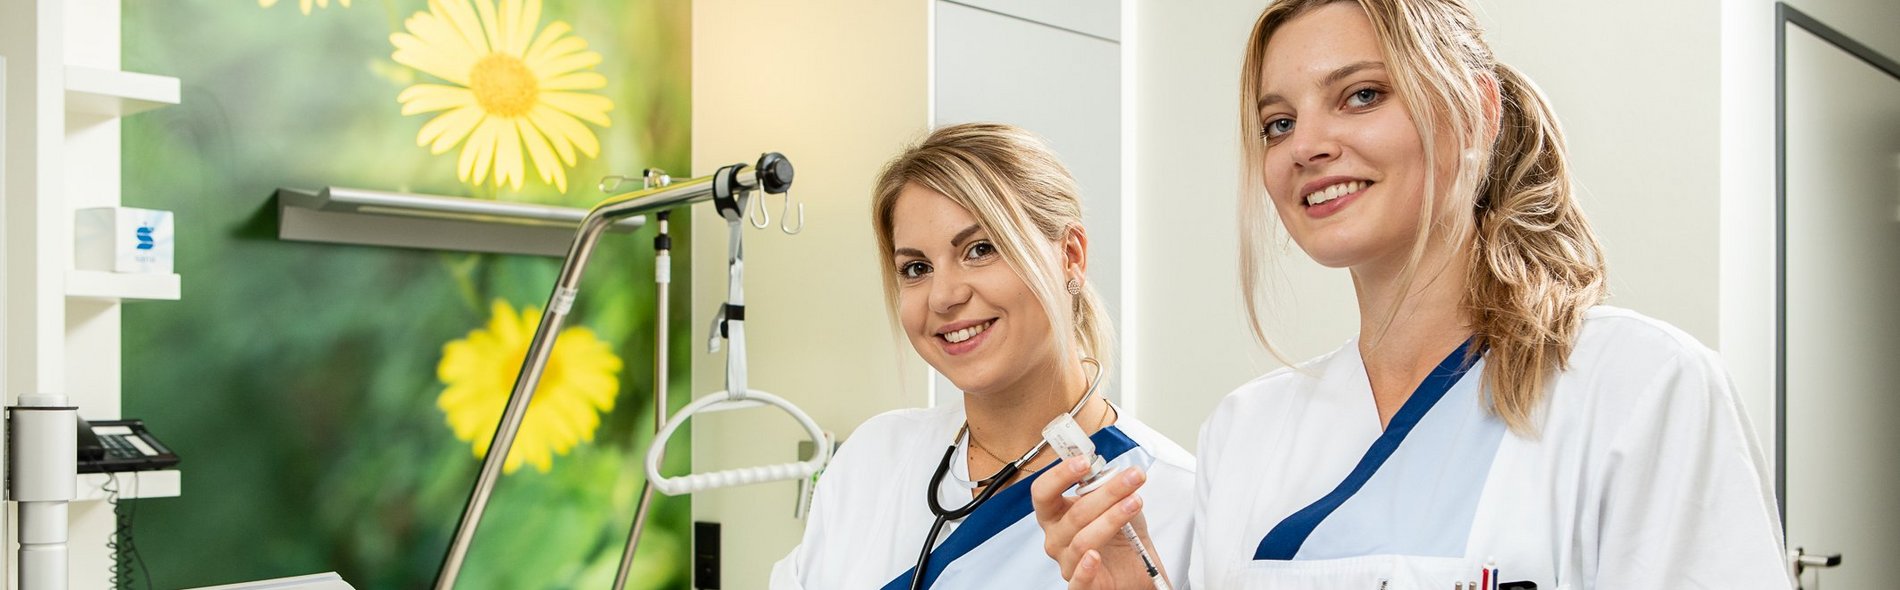 Medizinisches Fachperonal - zwei freundlich lächelnde Frauen